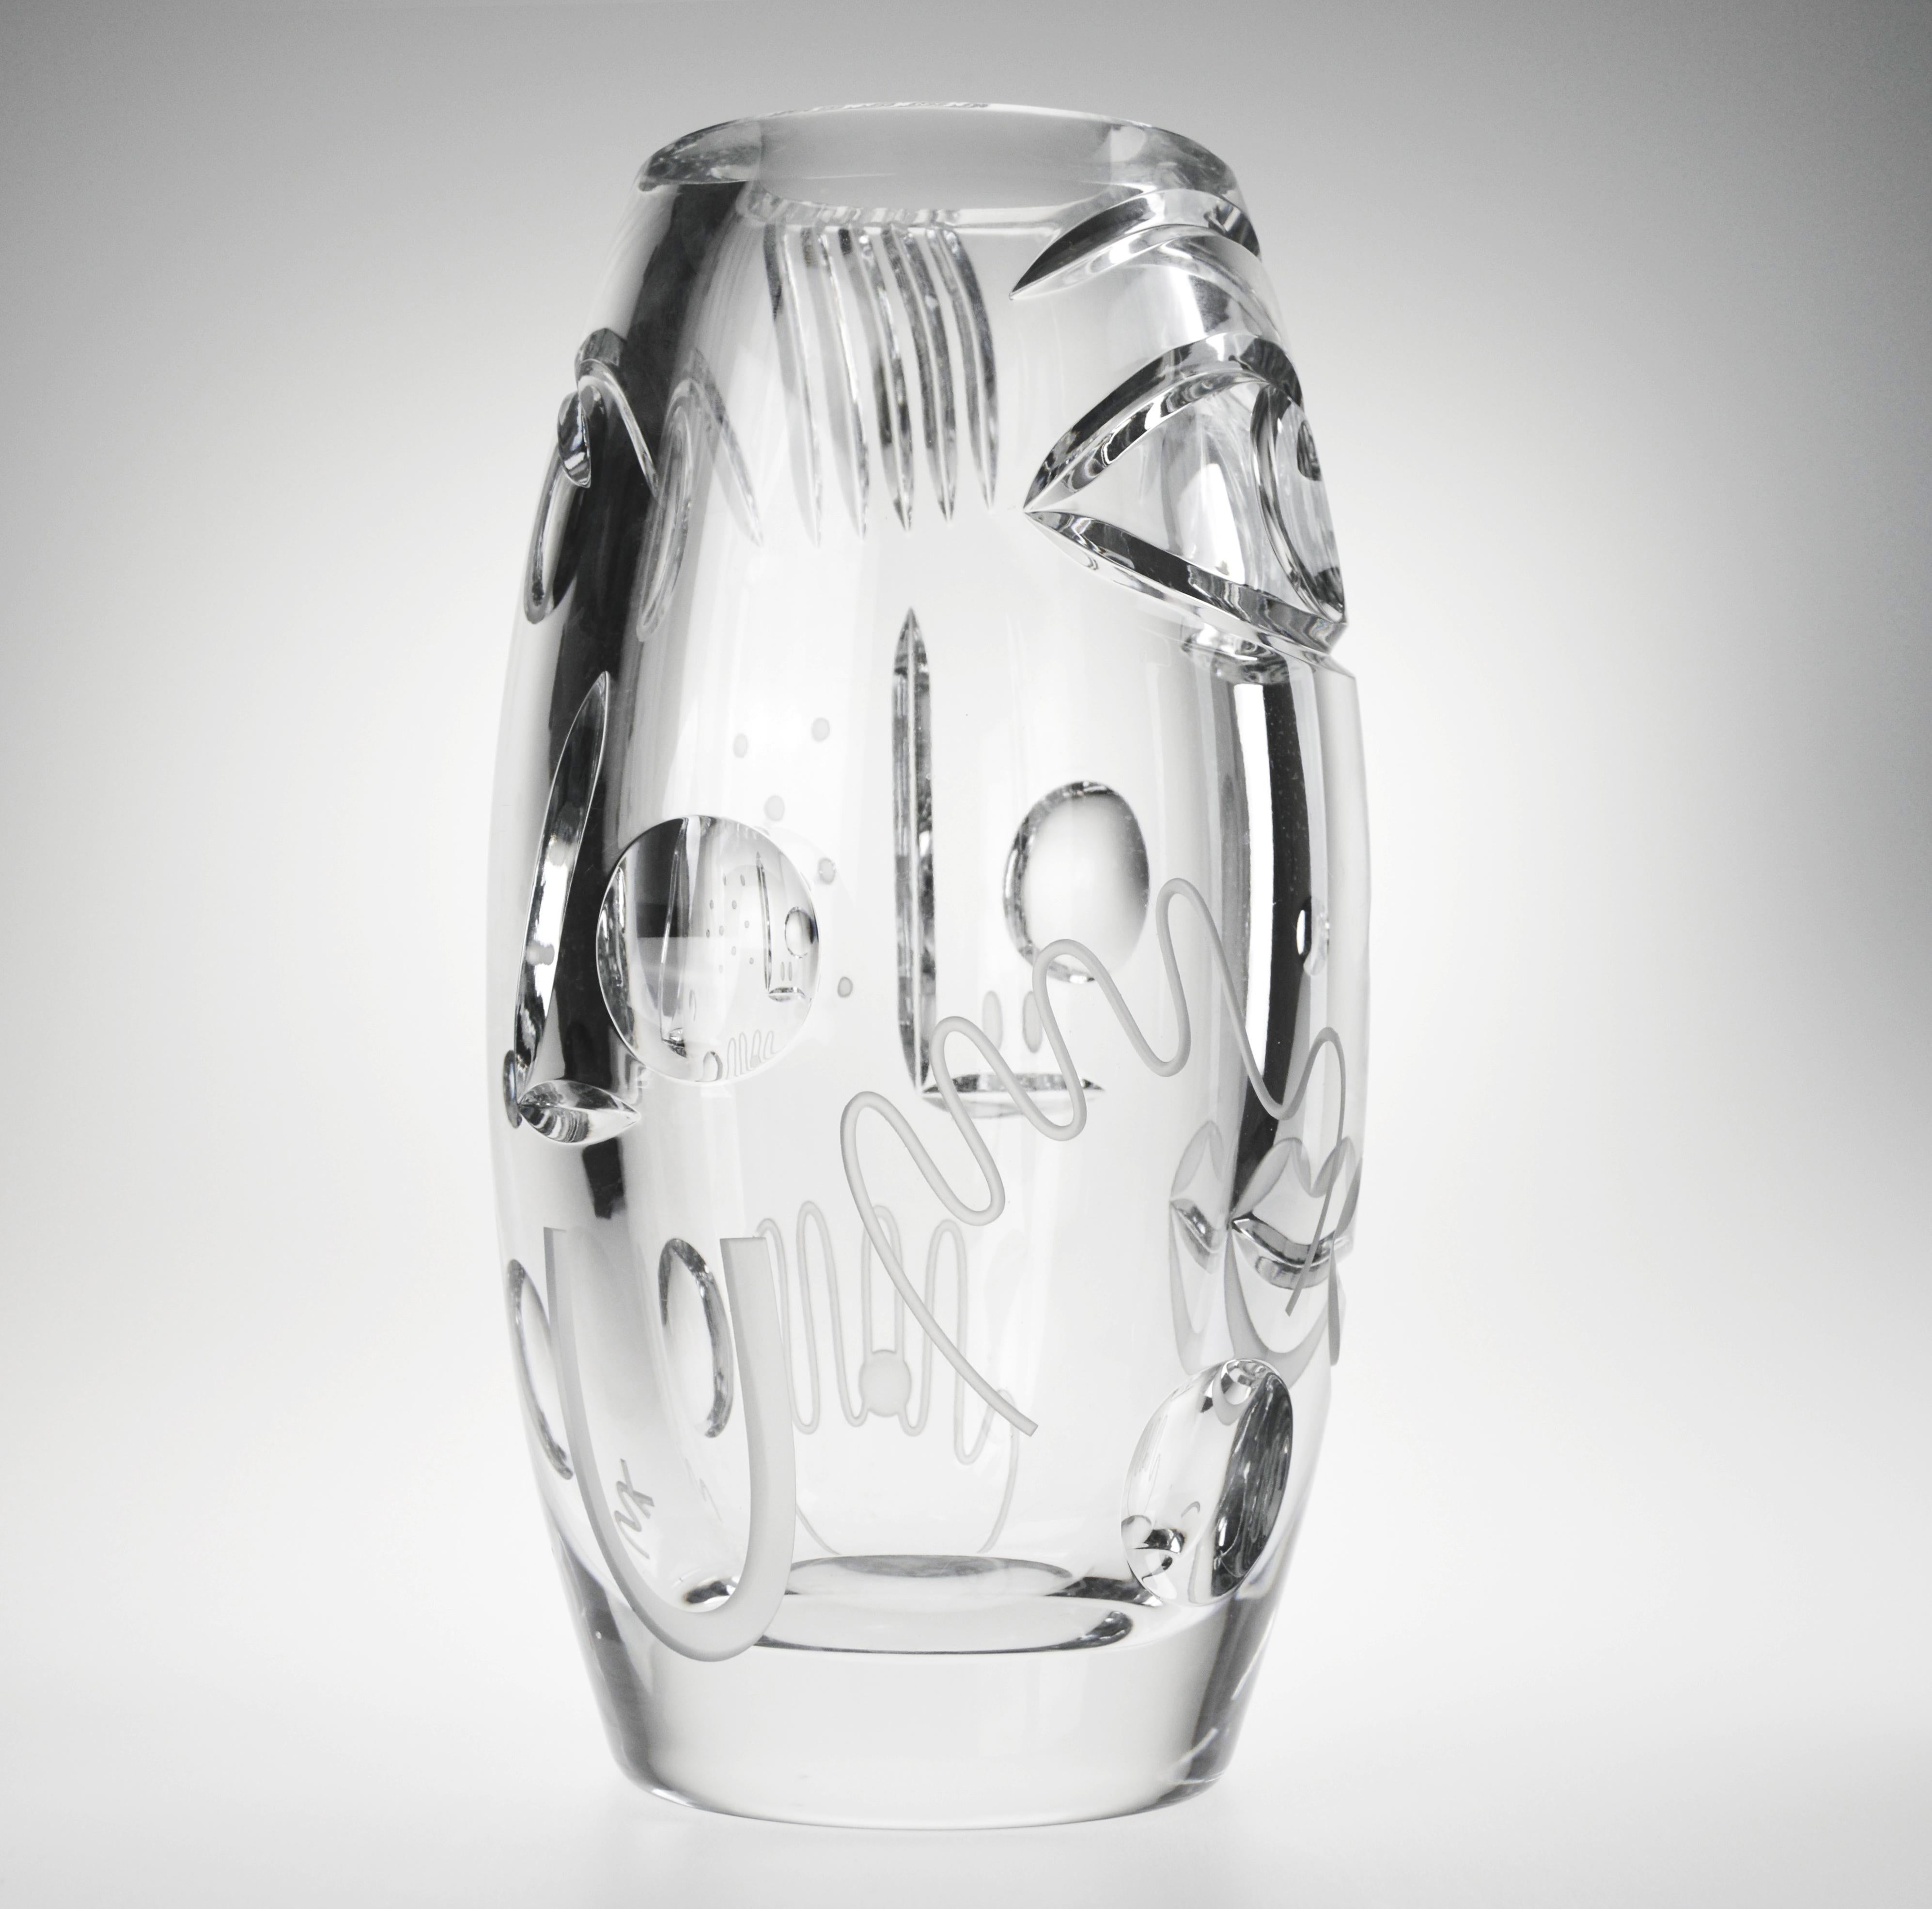 Krystal Kut Vase von Malwina Konopacka
2022
Unterschrift eingraviert, signiertes Echtheitszertifikat mitgeliefert
Ausgabe : Kolektiv Cite Radieuse
MATERIALIEN: Geblasenes Kristall
Abmessungen: 35 x 16 x 12 cm

Krystal ist eine limitierte Serie aus